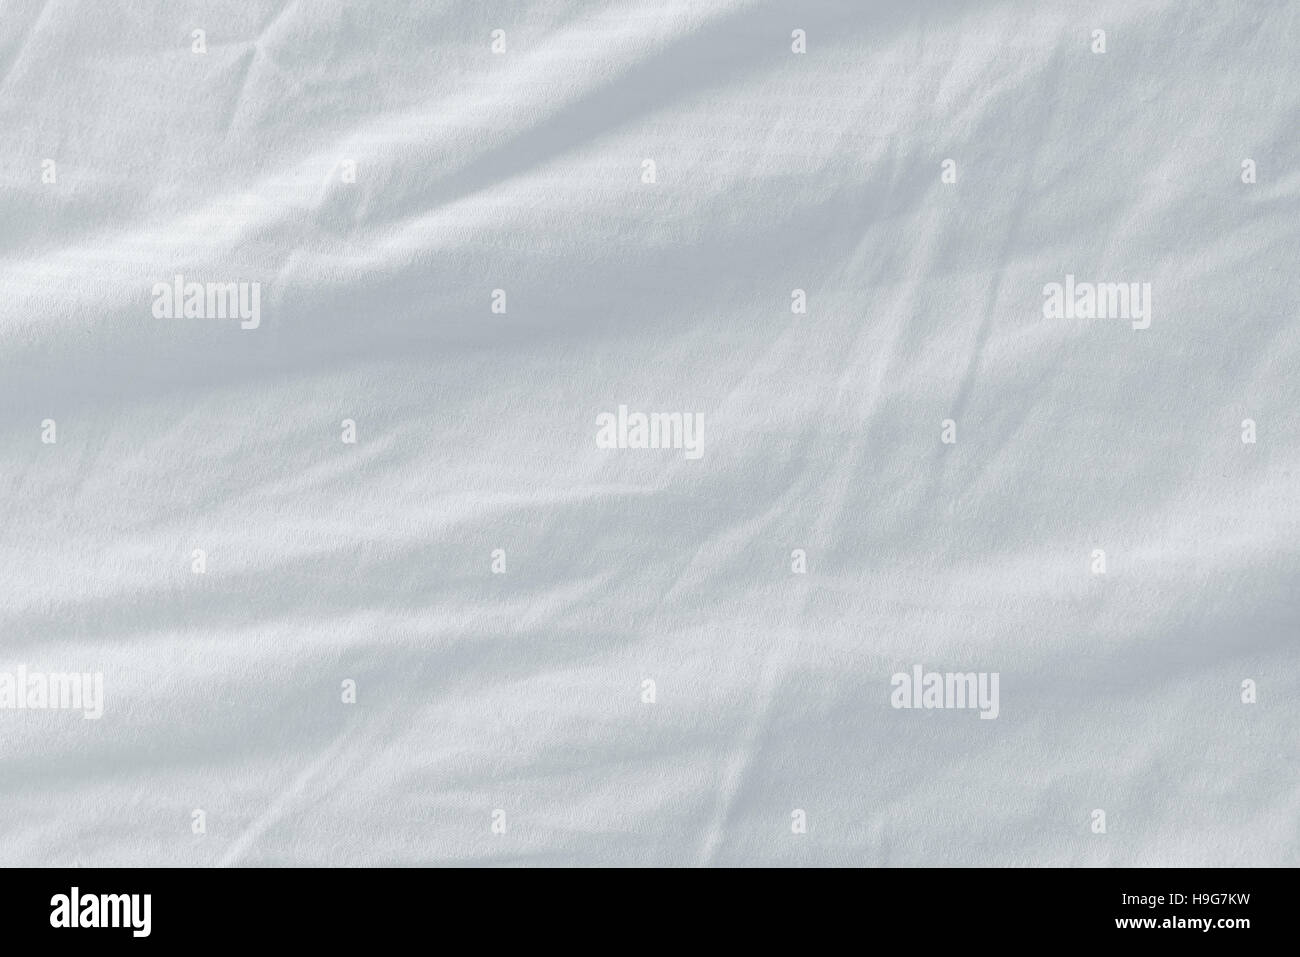 Bett Bettwäsche Textur, saubere weiße zerknitterten Baumwolle Materialoberfläche verwendet Stockfoto